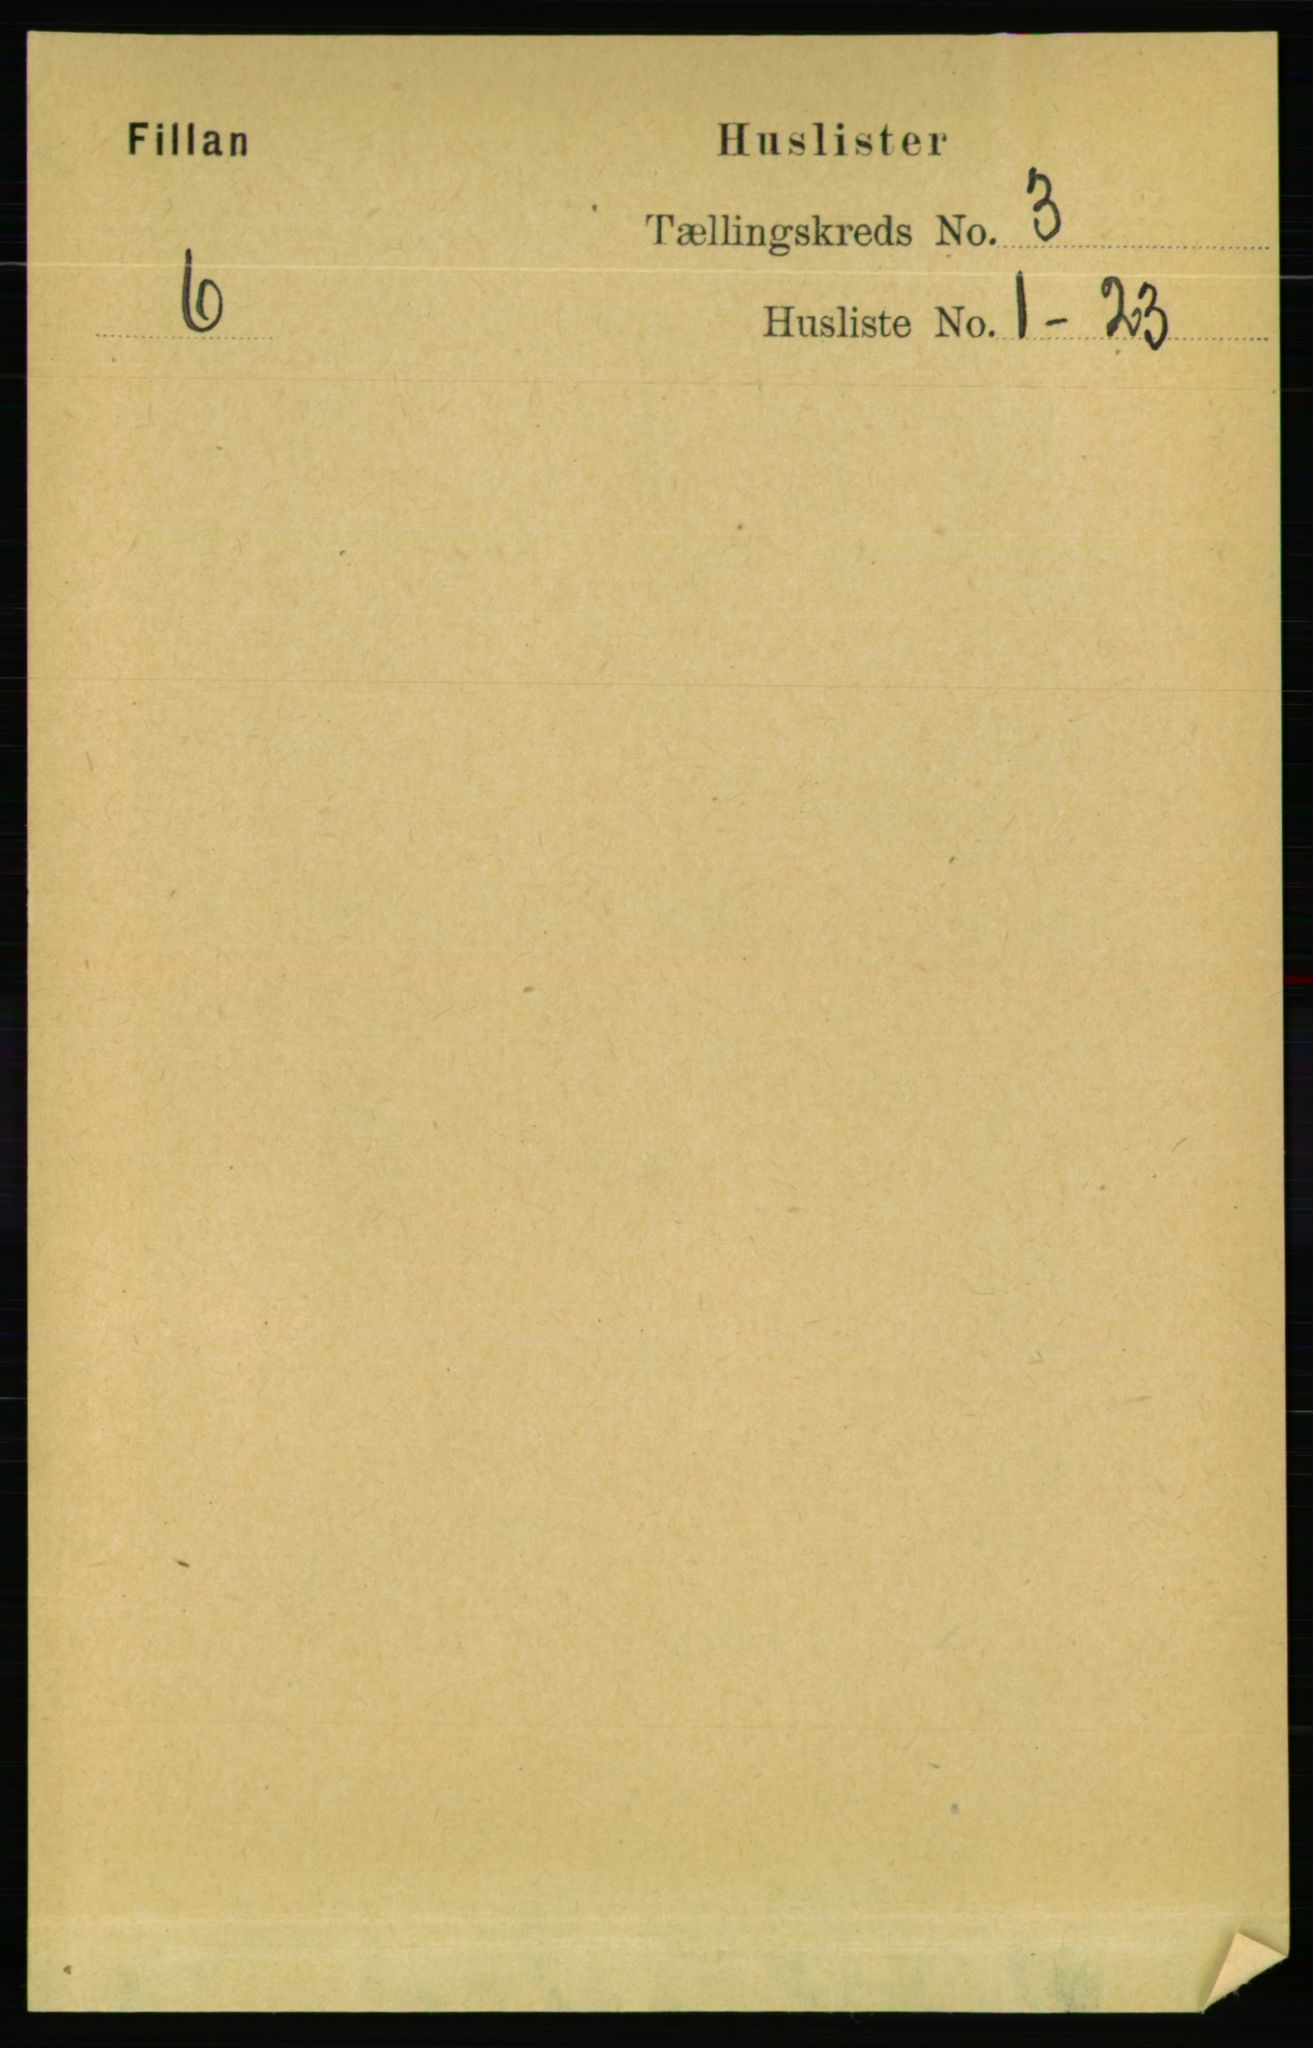 RA, Folketelling 1891 for 1616 Fillan herred, 1891, s. 430